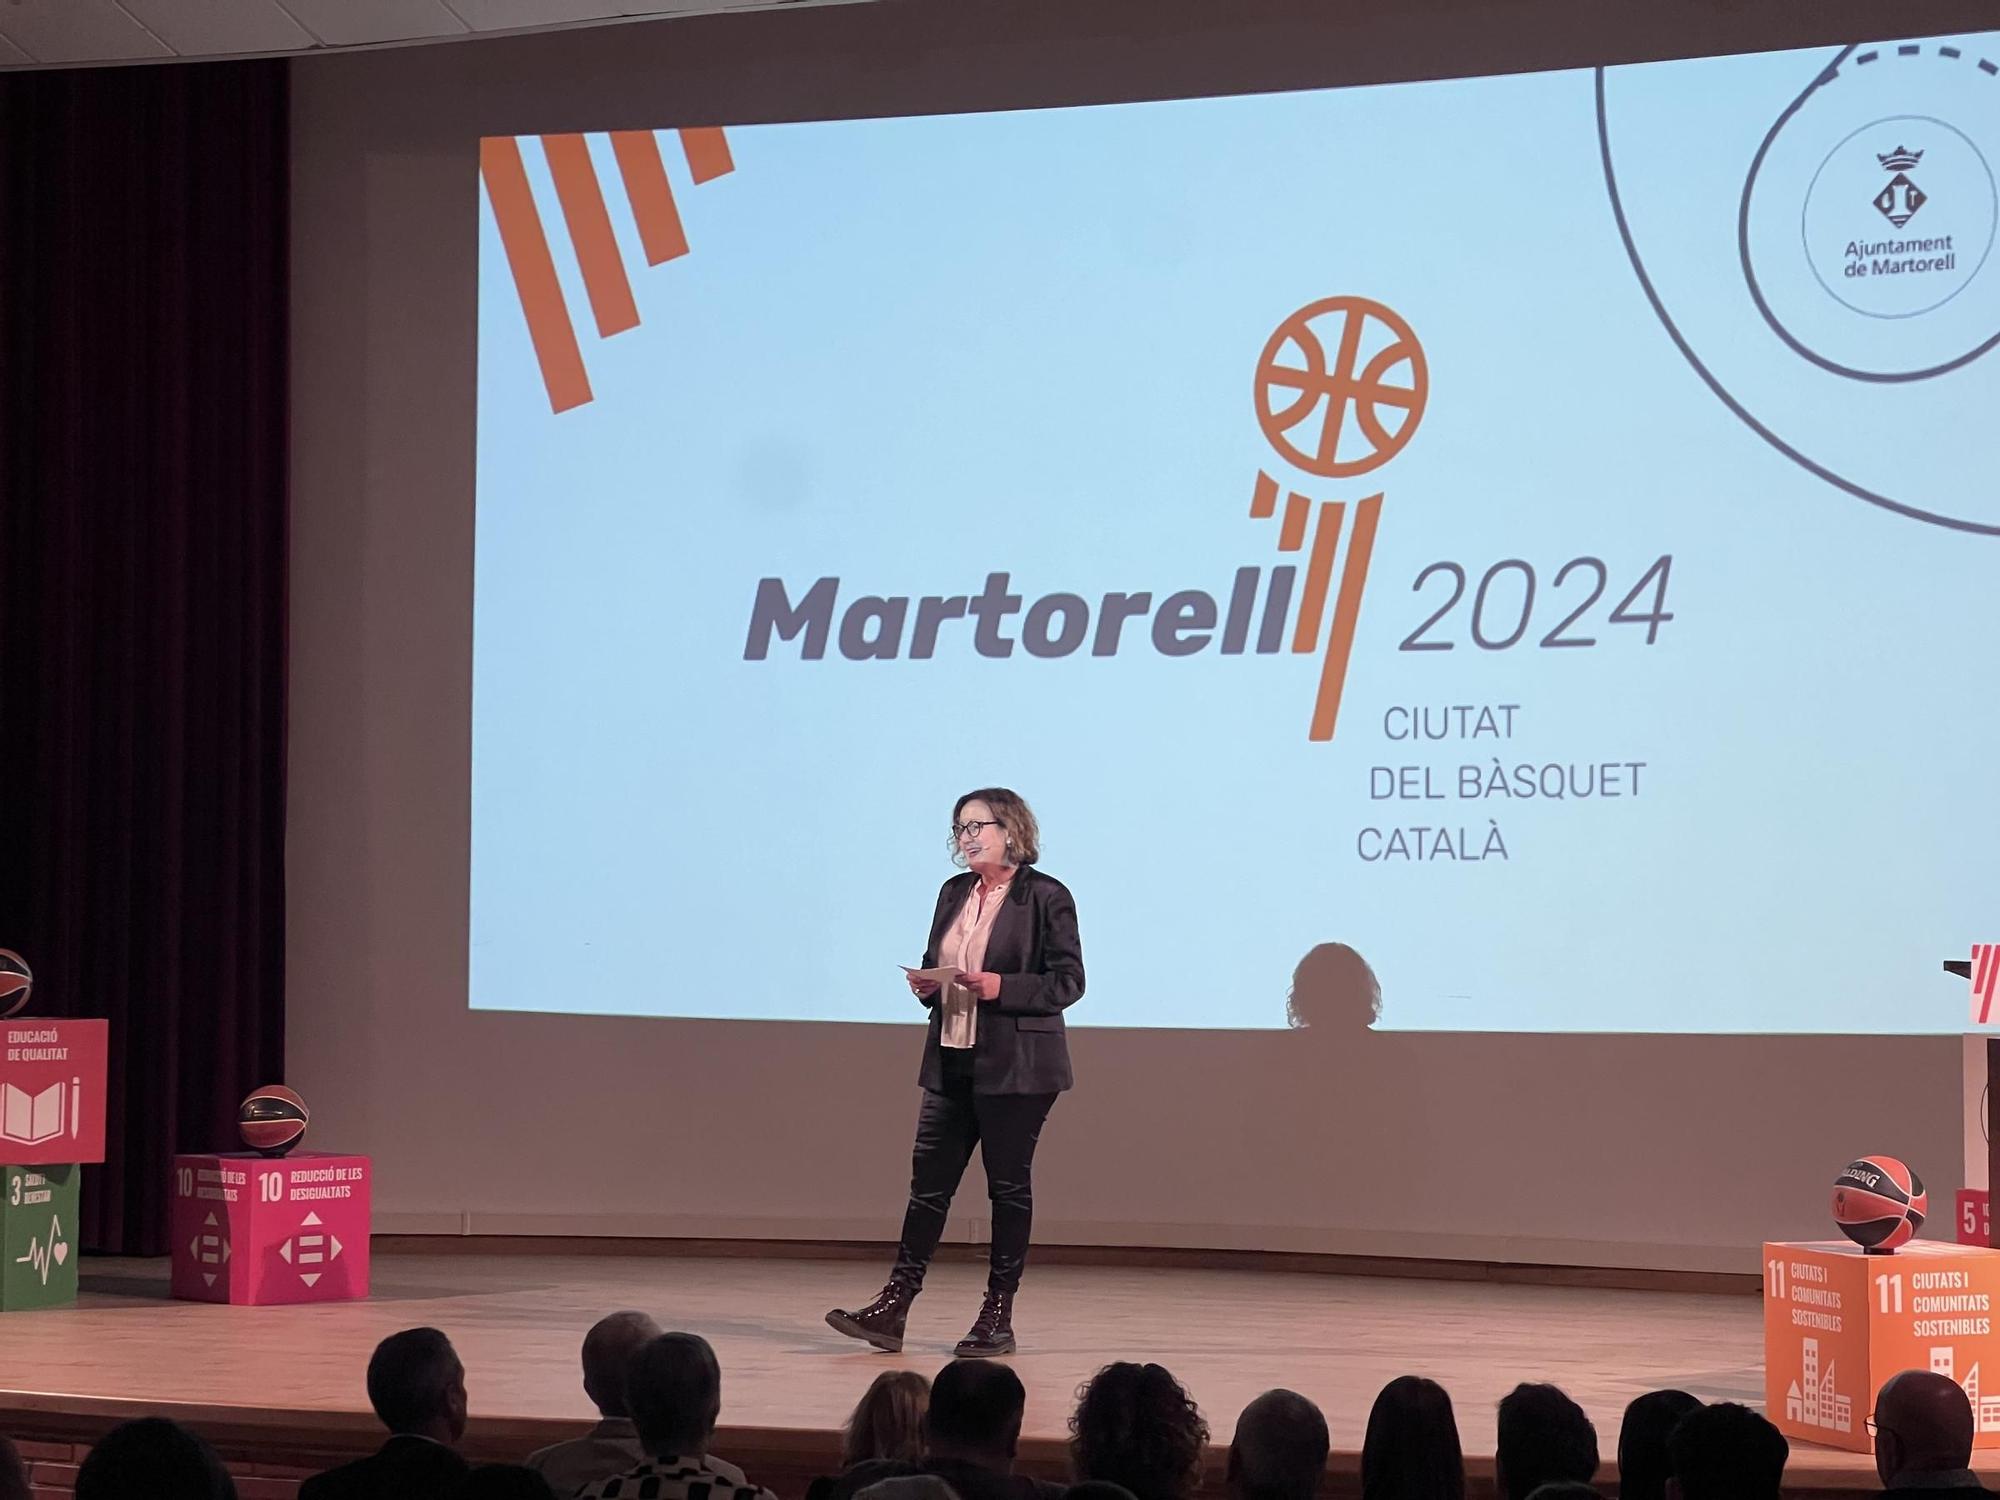 Imatges de la presentació de Martorell com a Ciutat del Bàsquet Català 2024